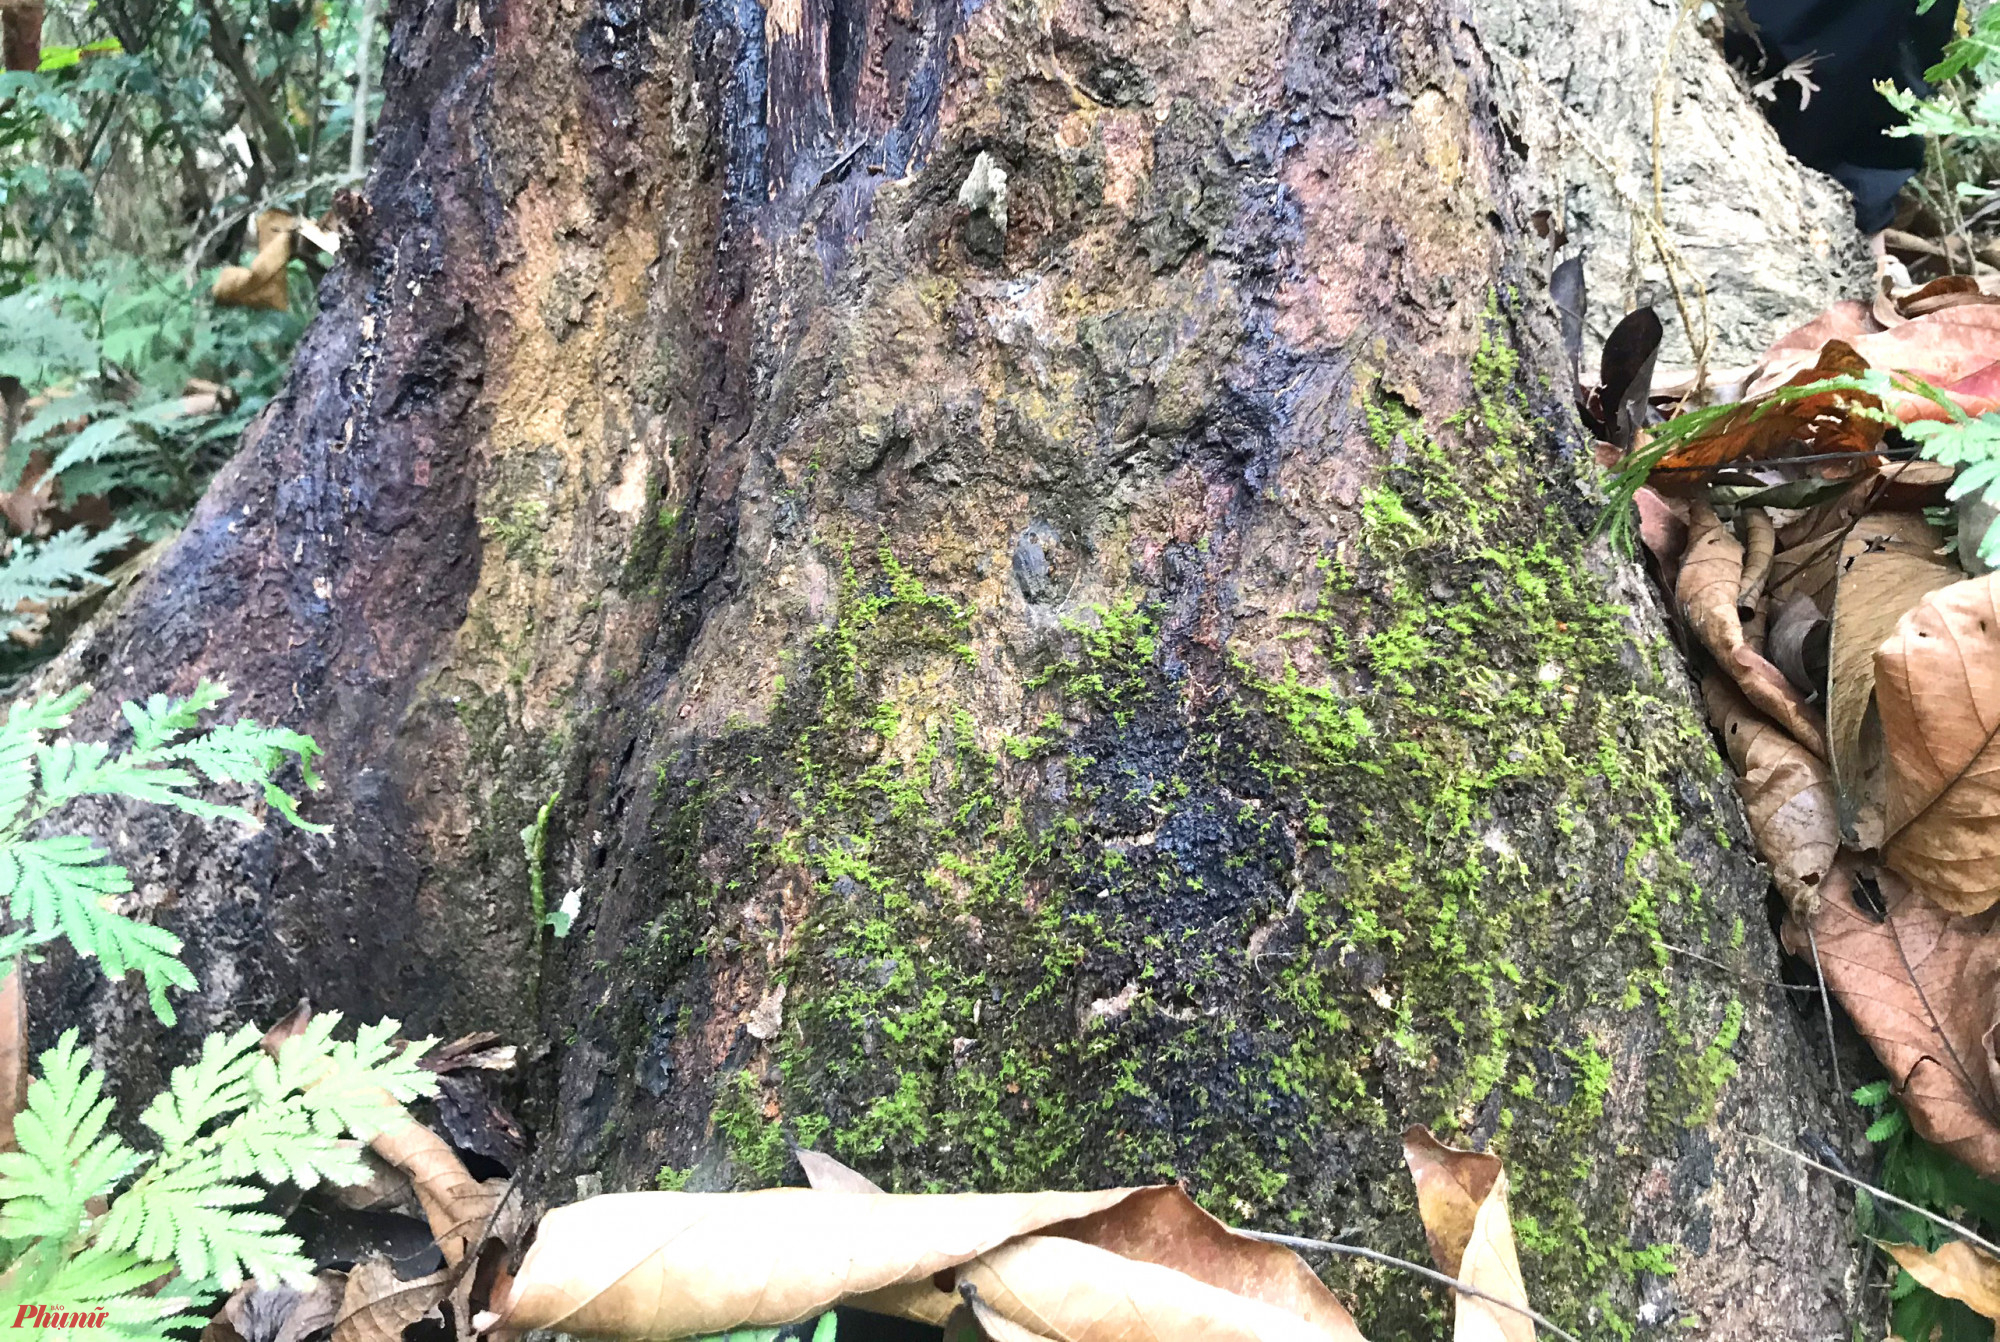 Theo người dân địa phương, hiện trong cánh rừng nguyên sinh do bản Na Hang khoanh nuôi, bảo vệ có gần 100 cây đinh hương cổ thụ, tuổi đời từ 70-80 năm tuổi. Riêng những cây nhỏ vài năm tuổi thì đếm không xuể.